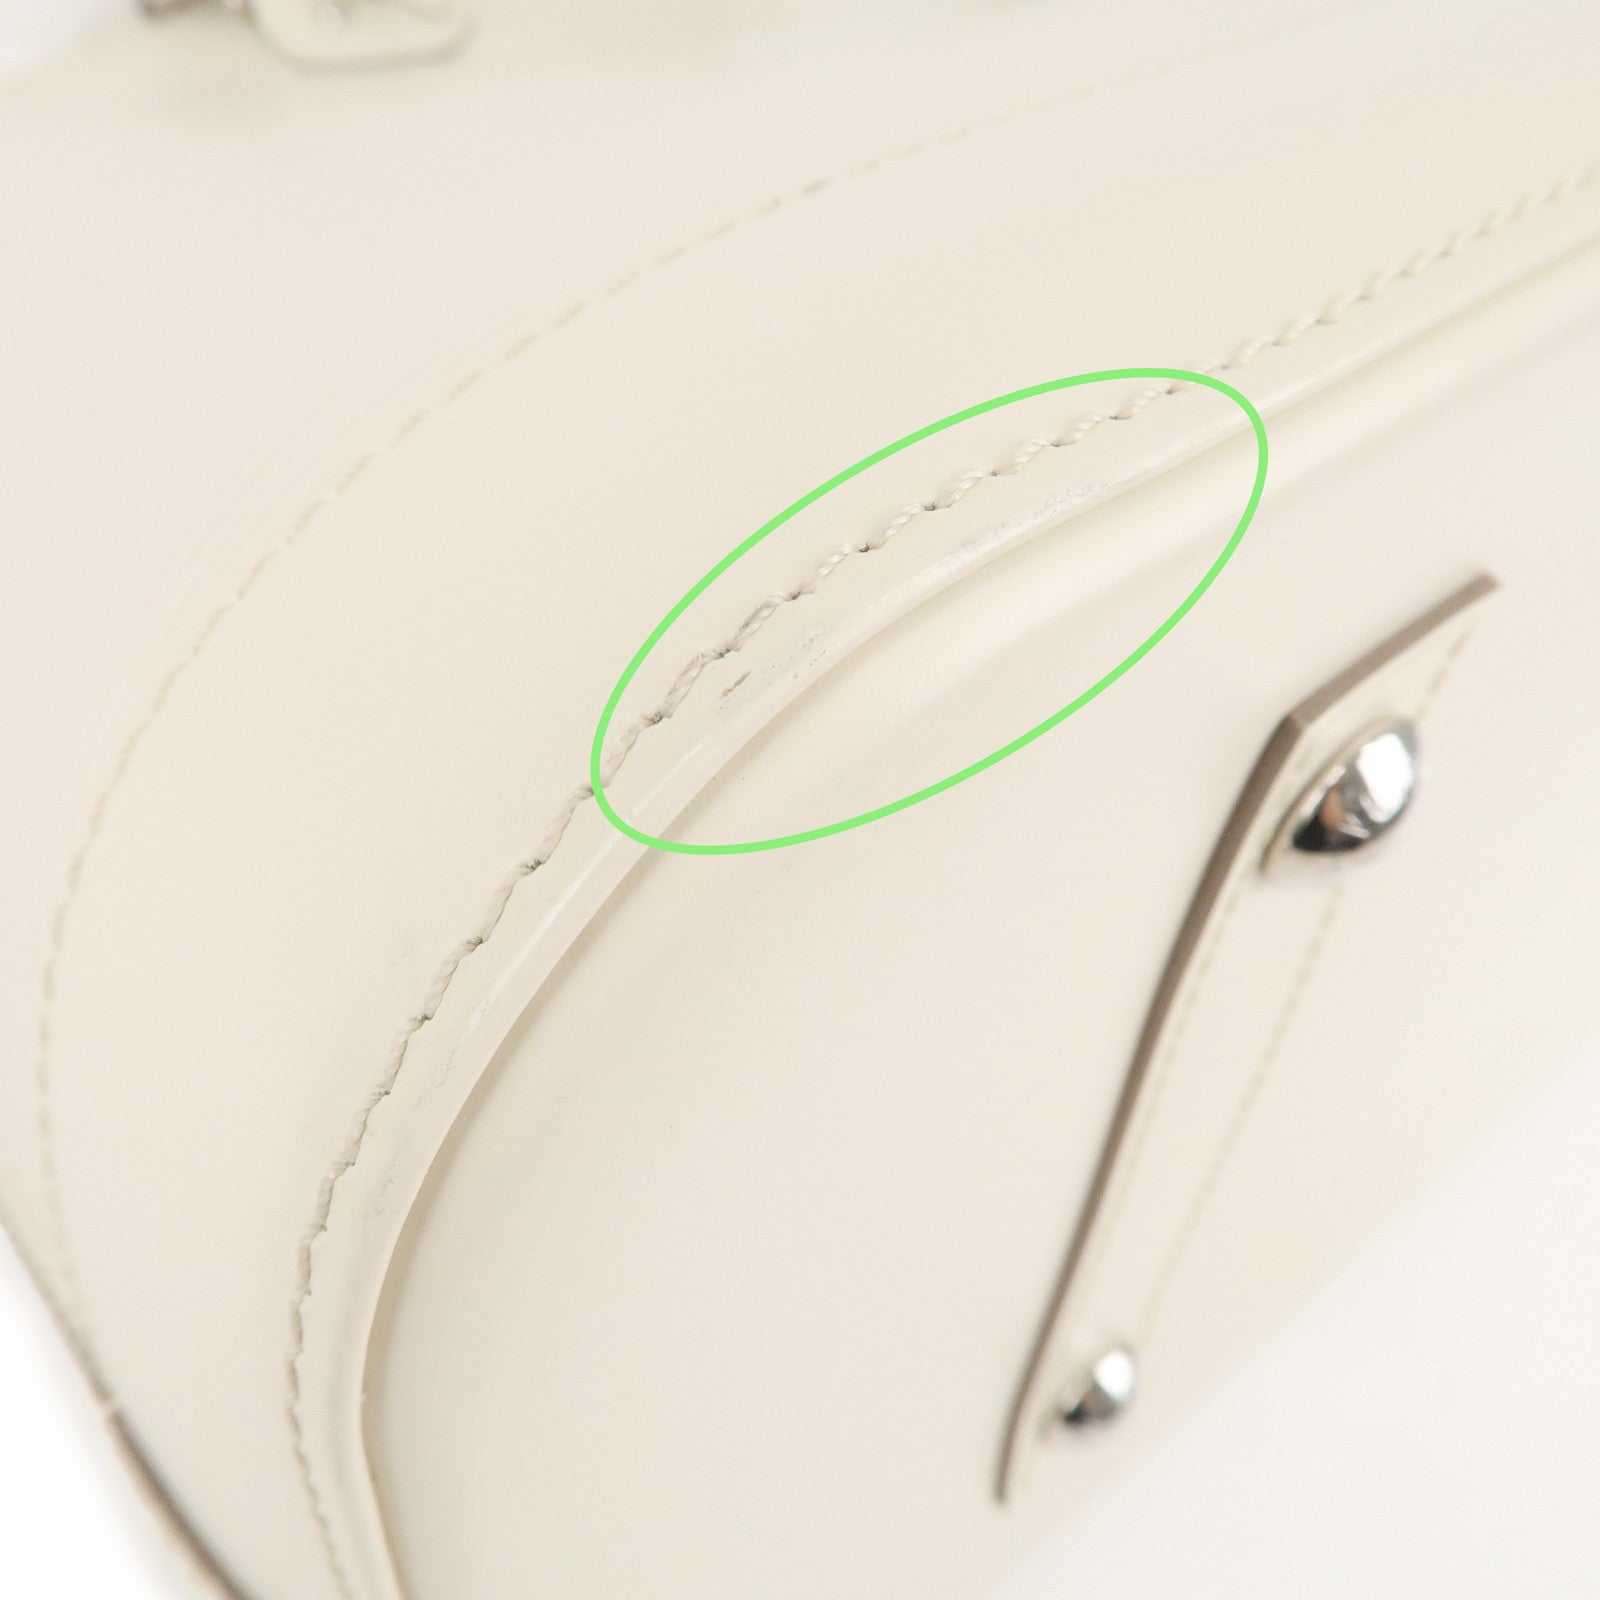 Authentic-Louis-Vuitton-Epi-Alma-GM-Hand-Bag-White-Ivoire-M4045J